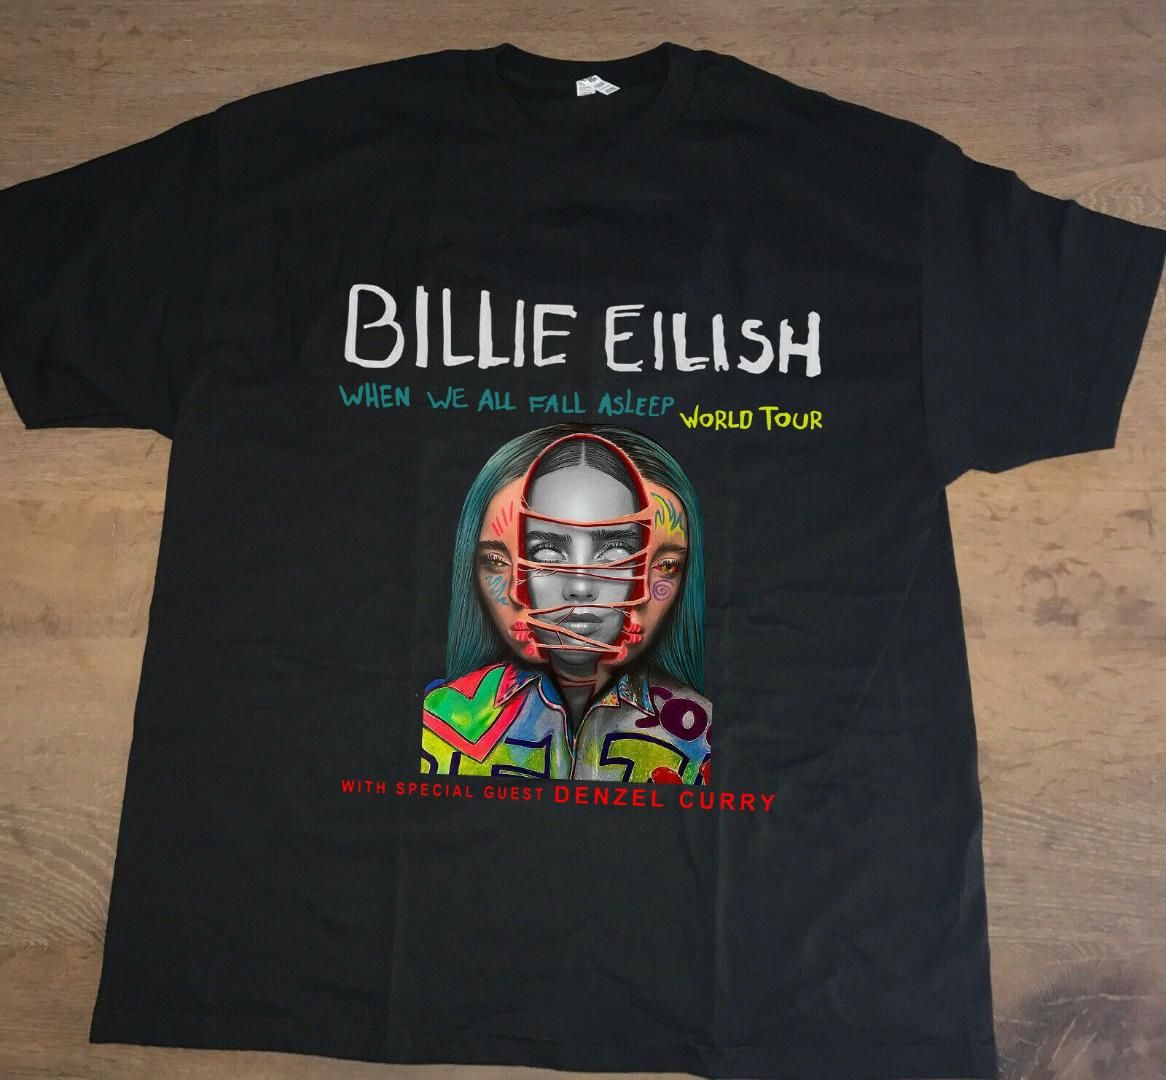 Billie Eilish Merch Size Chart